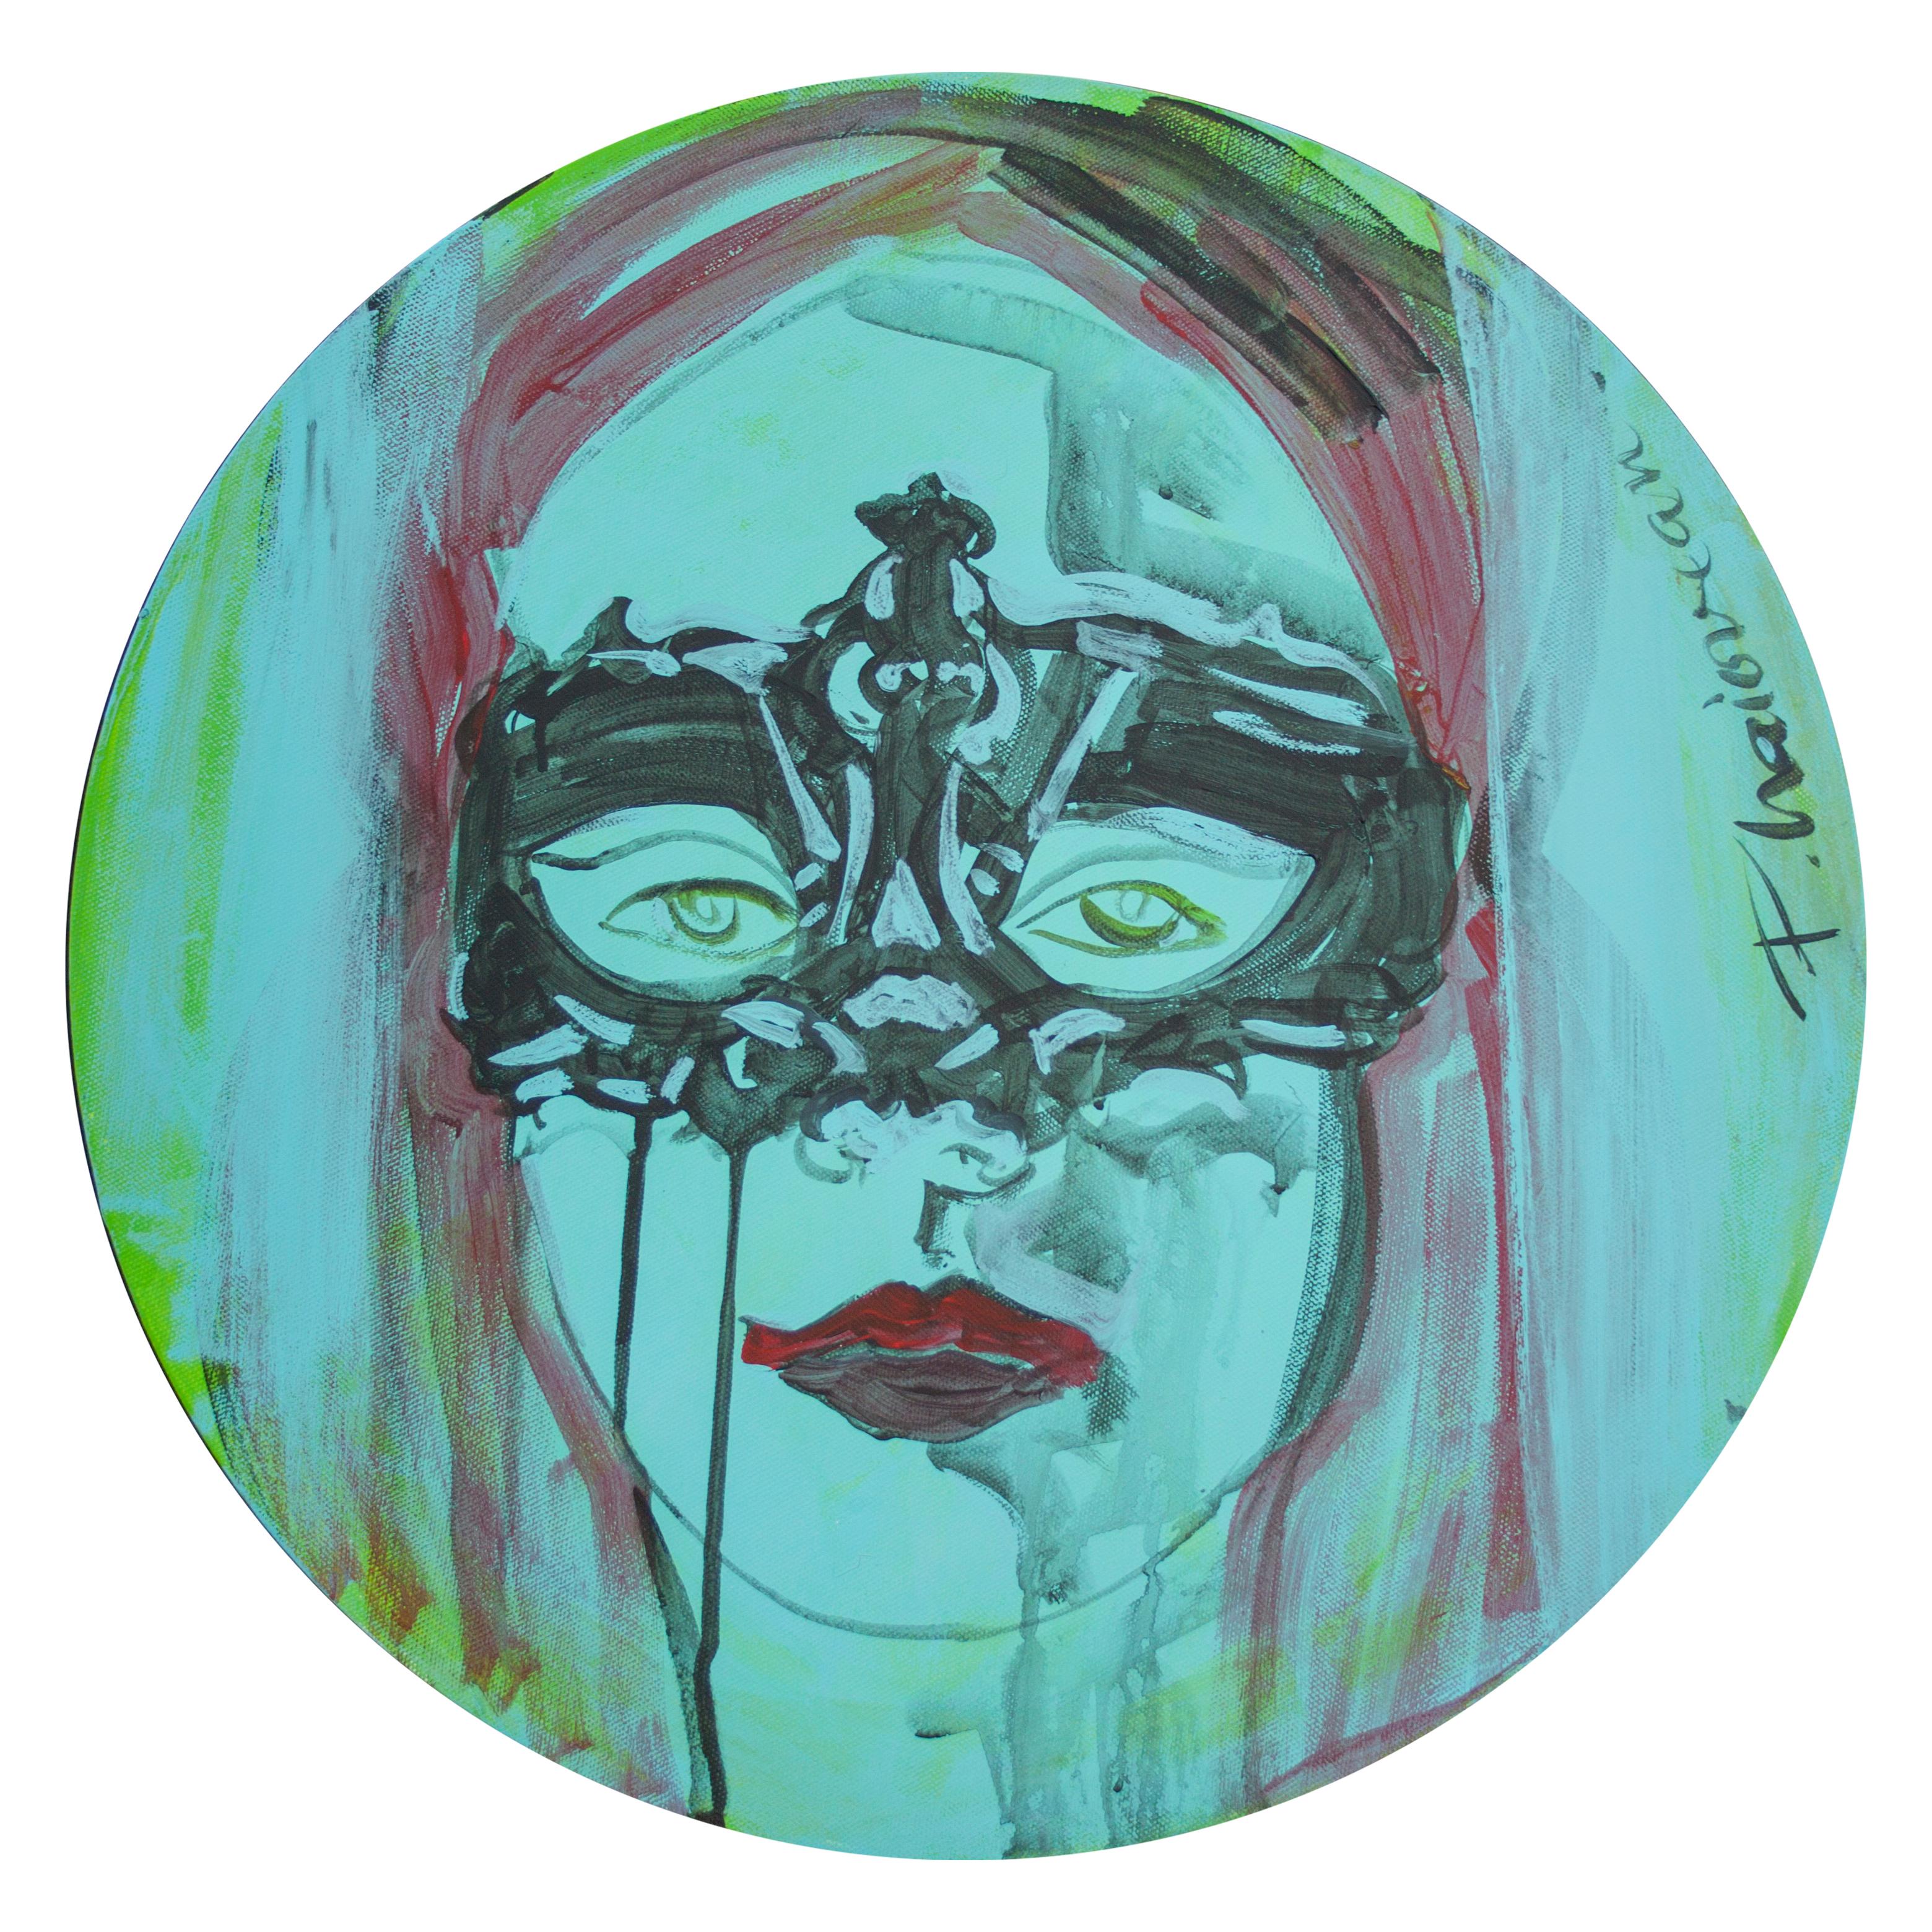 "Zeitalter der Unschuld", einzigartiges Originalgemälde
Eine weibliche, unschuldige Präsenz, Porträt eines Mädchens mit venezianischer Maske.
Acryl auf Leinwand
20in / 50cm, rund

Wird direkt vom Künstler aus Forest Hills, NY, geliefert.